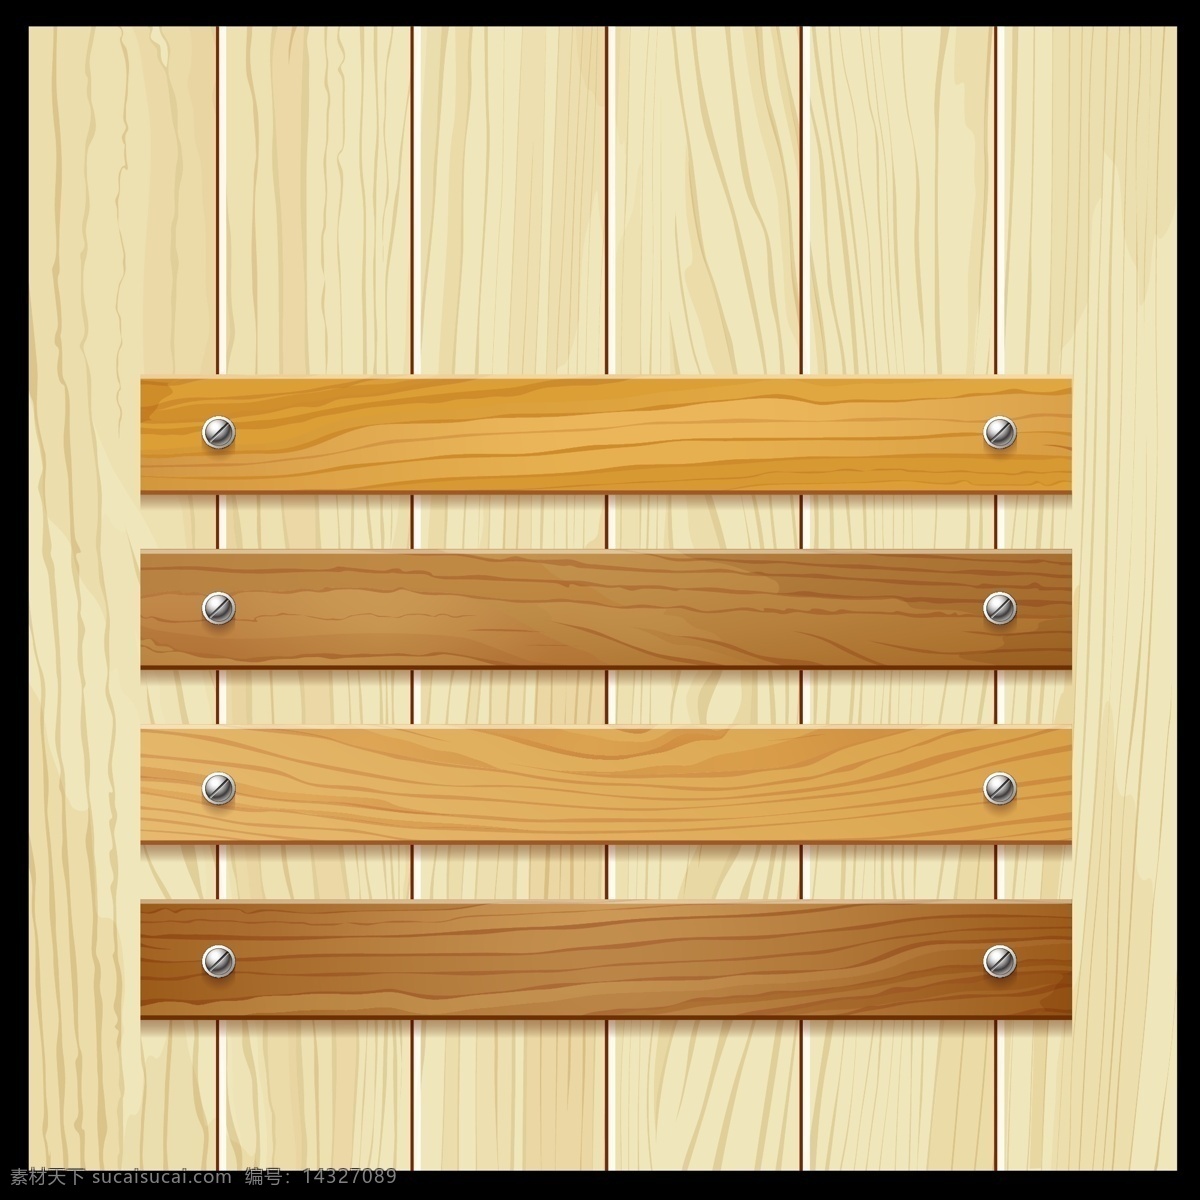 木板矢量图 木纹 木地板 彩色木板 木质纹理 木板条 手绘木板 逼真木板 背景底纹 矢量类型